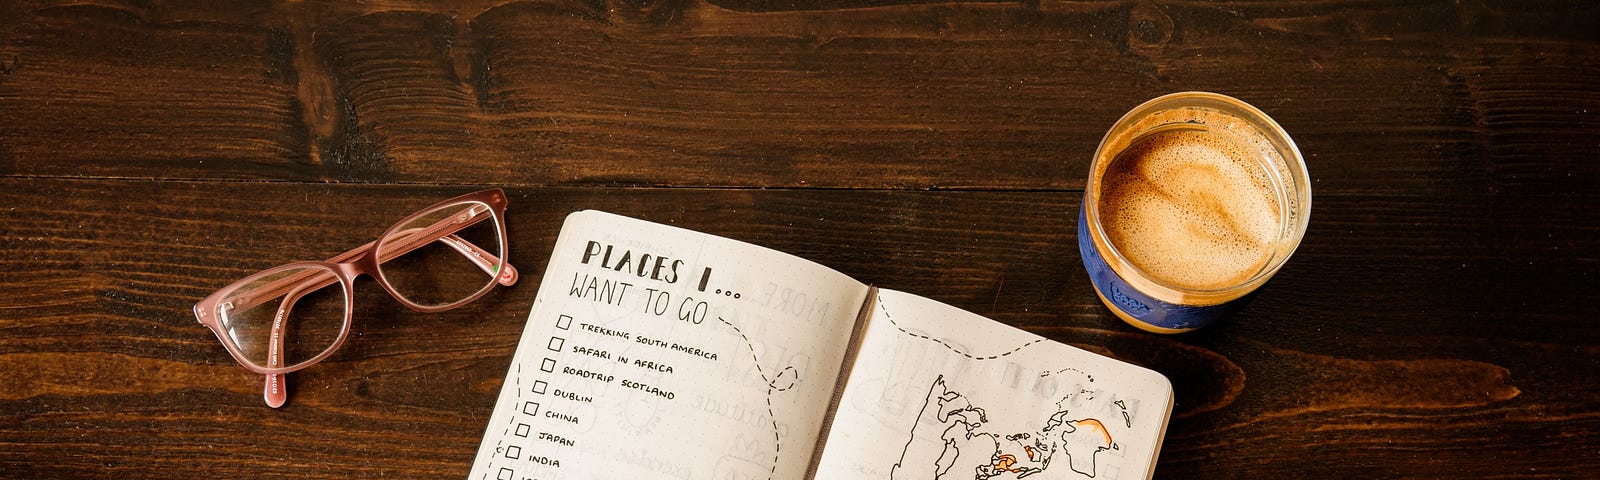 Vista superior de uma mesa de madeira com óculos, caneca com café e caderno com uma lista de lugares para viajar e um desenho de um mapa.